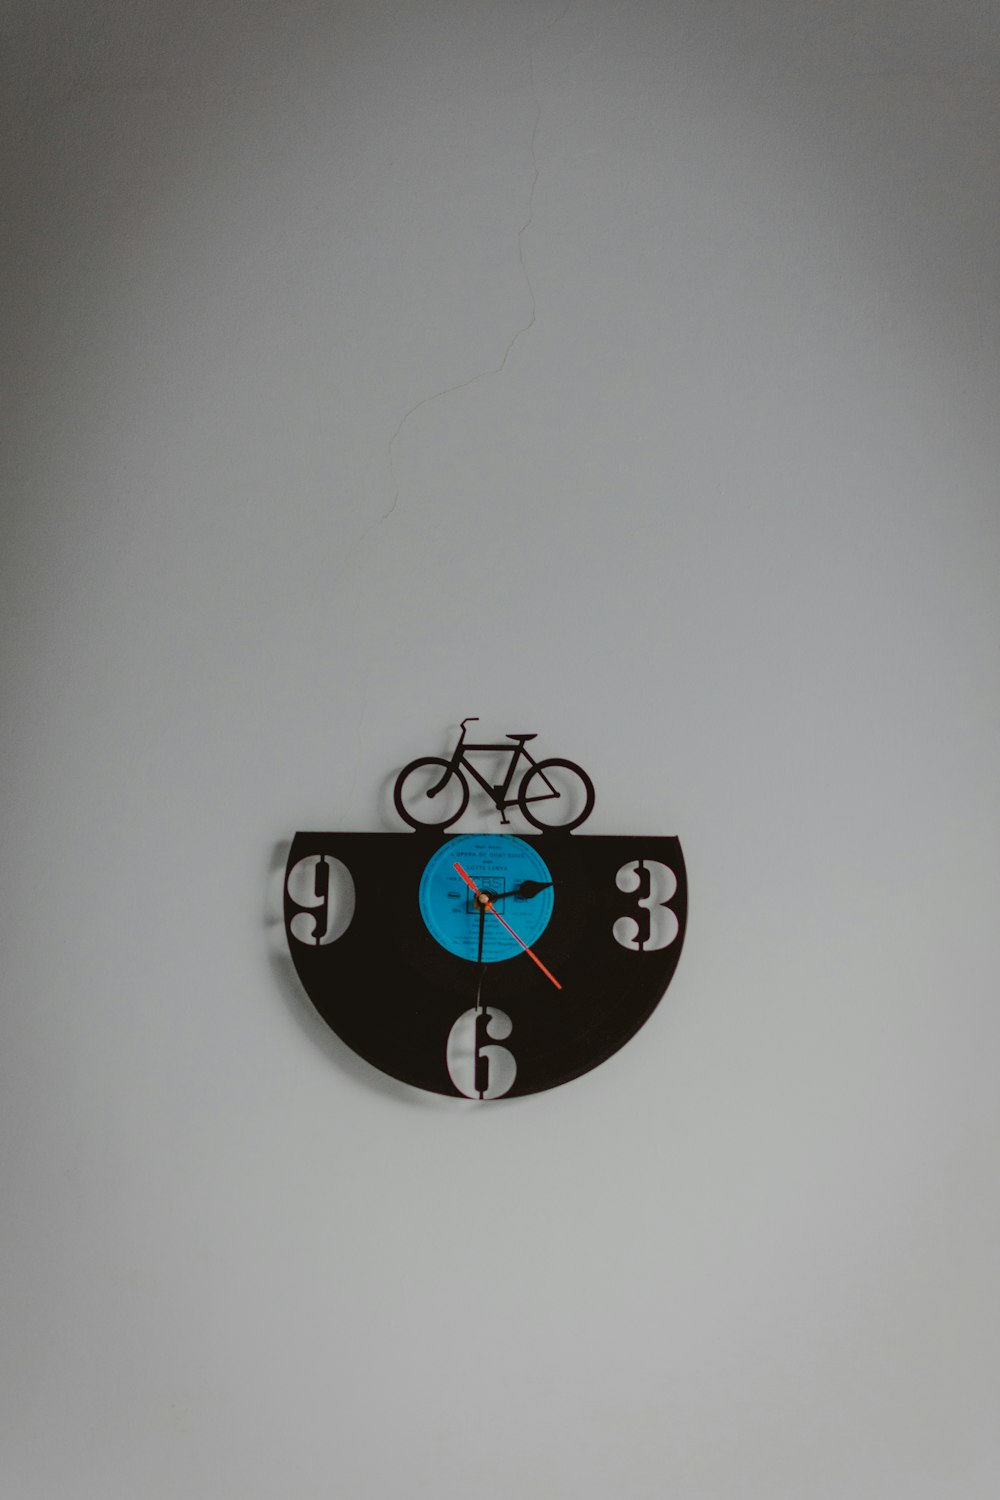 黒と青の自転車をテーマにしたアナログ壁掛け時計、3:30の時刻を表示